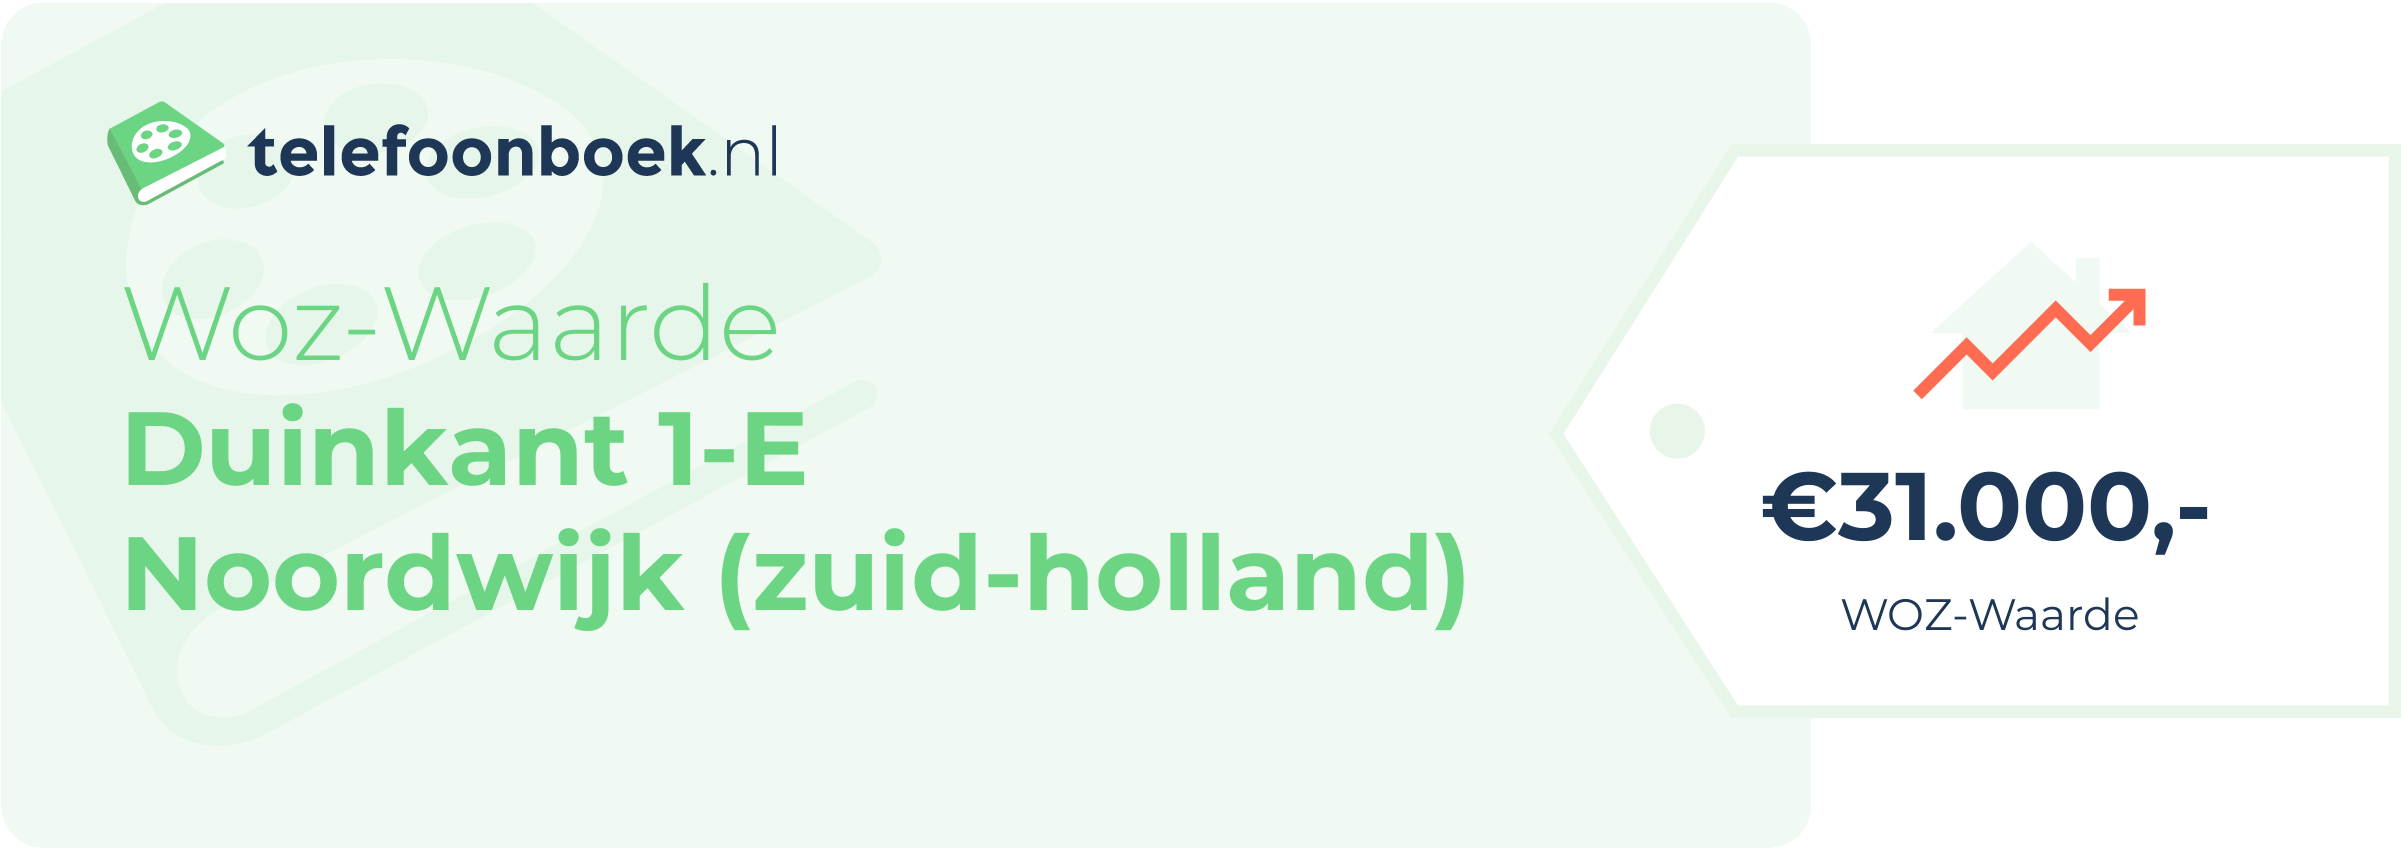 WOZ-waarde Duinkant 1-E Noordwijk (Zuid-Holland)